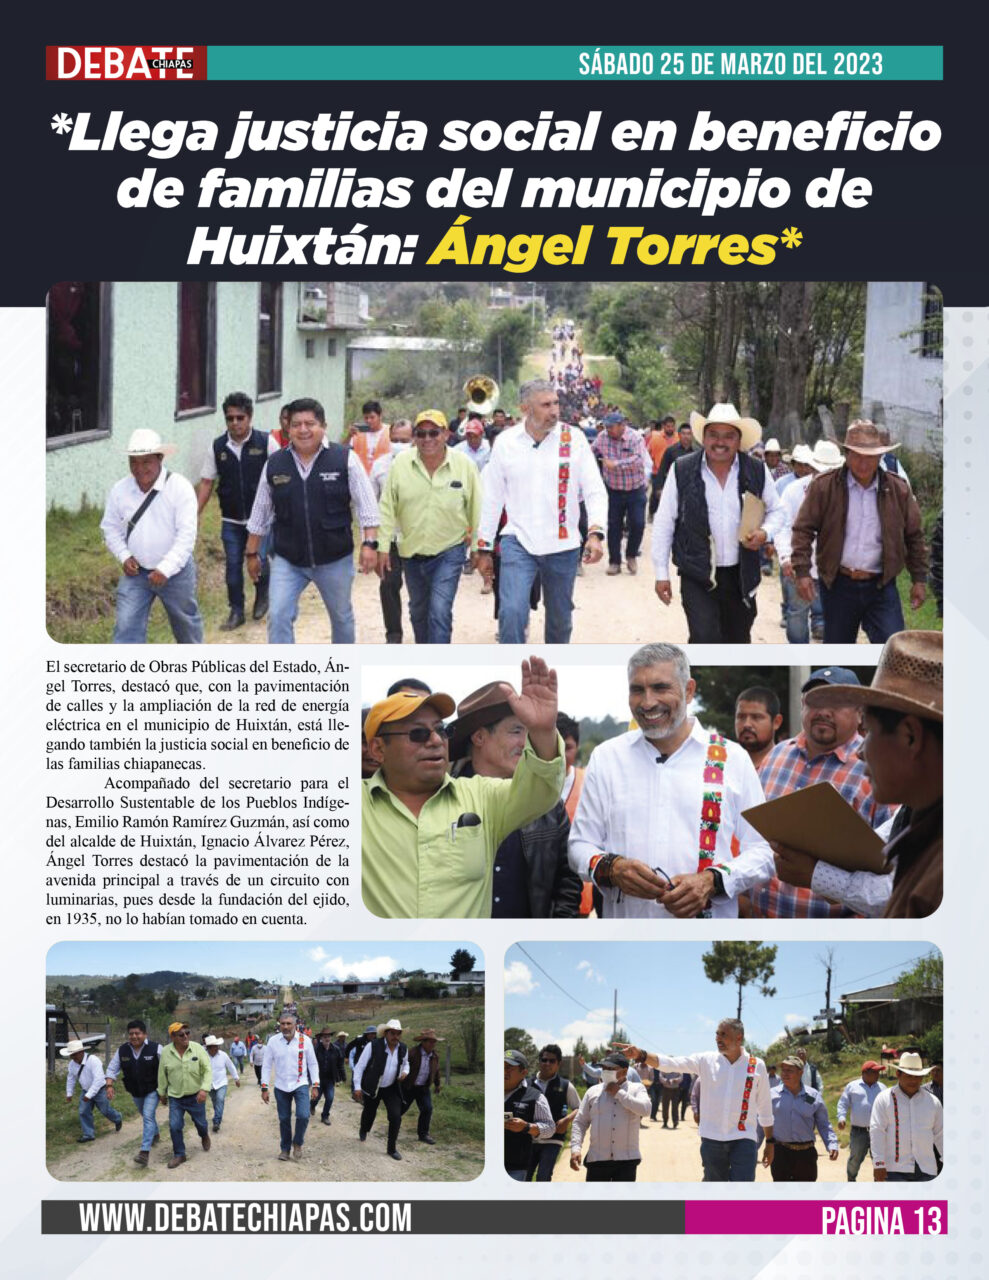 *Llega justicia social en beneficio de familias del municipio de Huixtán: Ángel Torres*